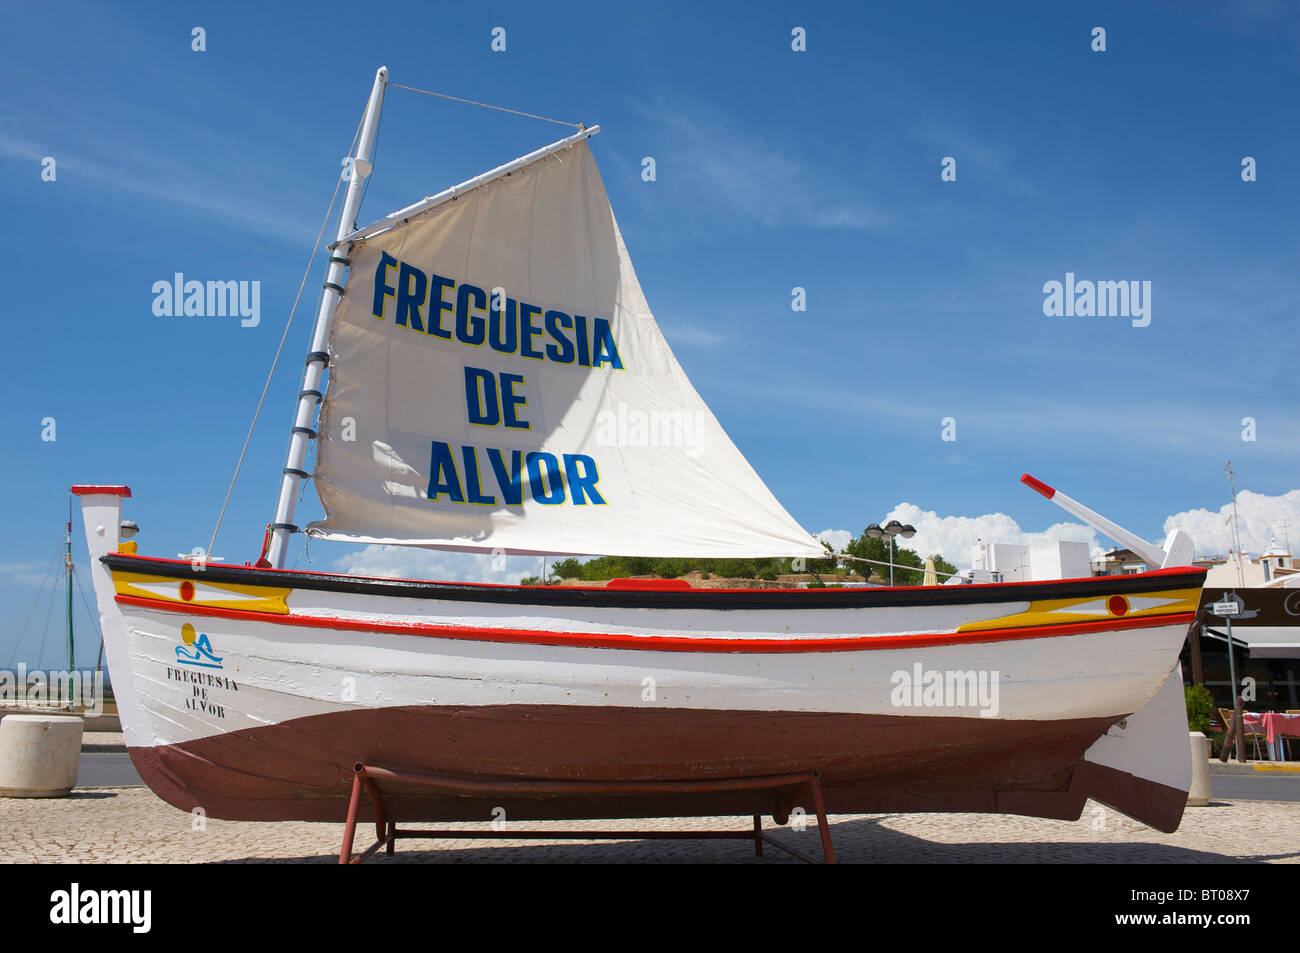 Bateau de pêche traditionnel, Algarve, PORTUGAL Banque D'Images